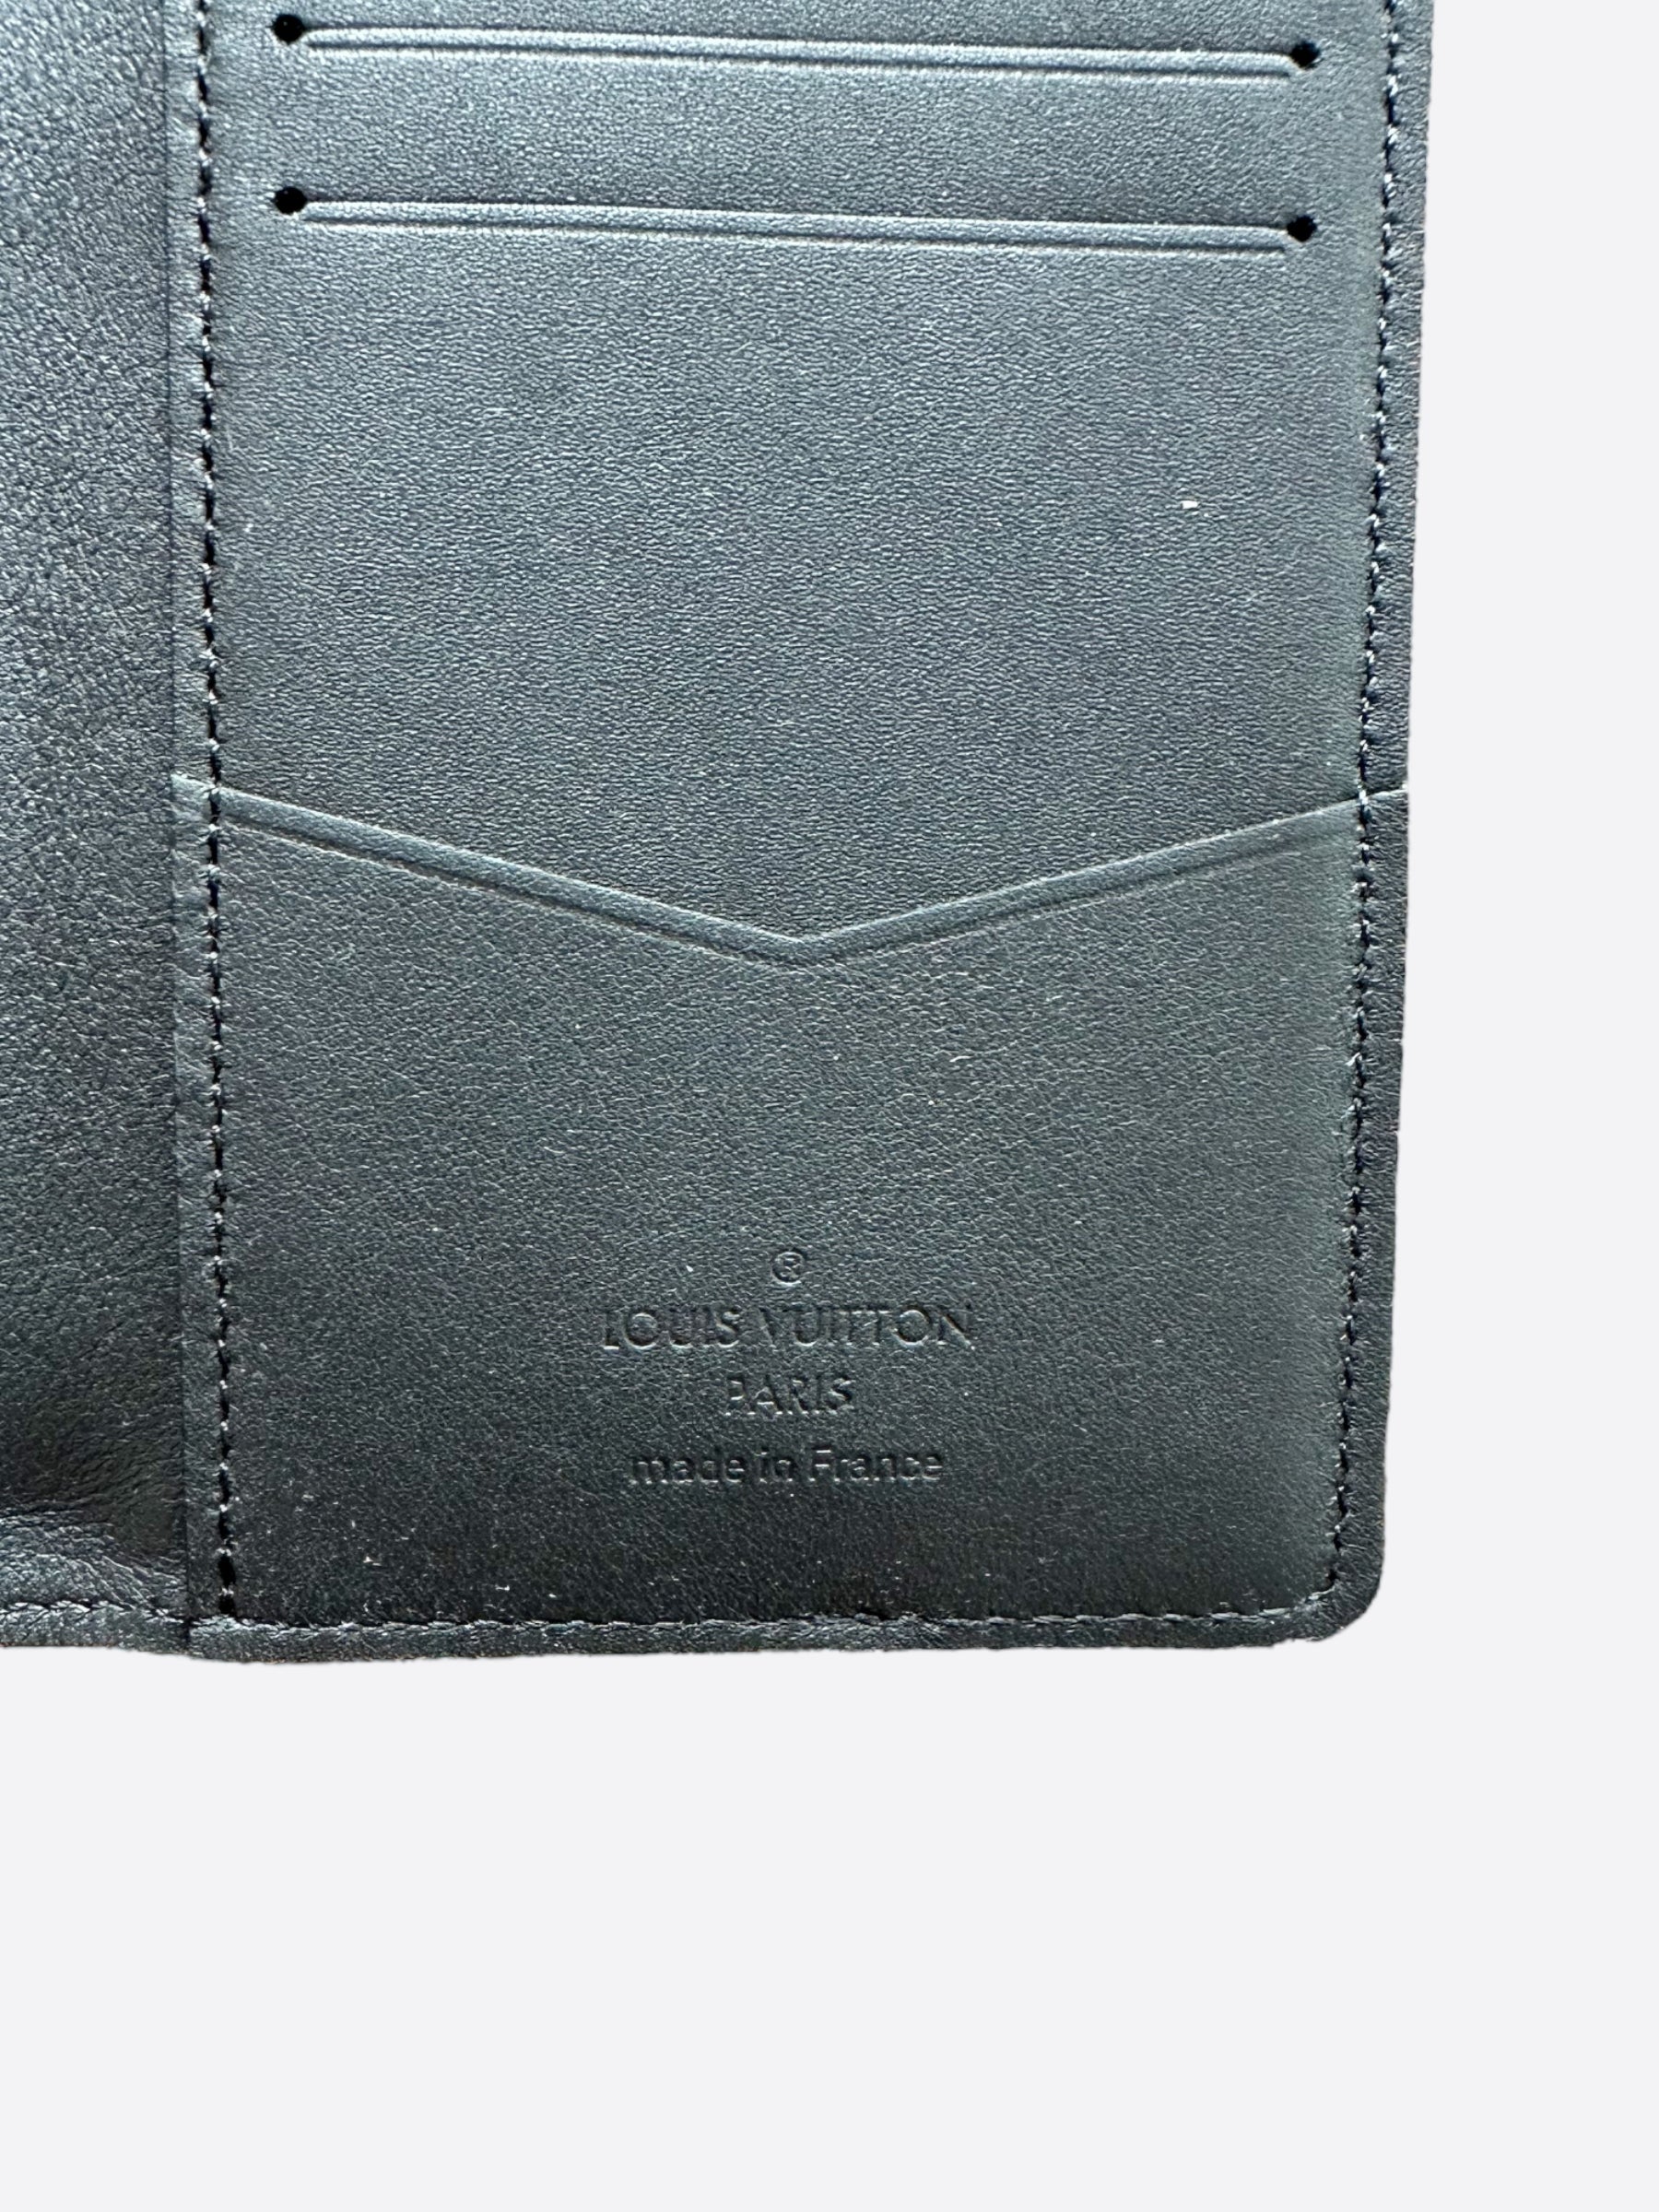 Louis Vuitton Cyan Epi Leather Pocket Organizer Louis Vuitton